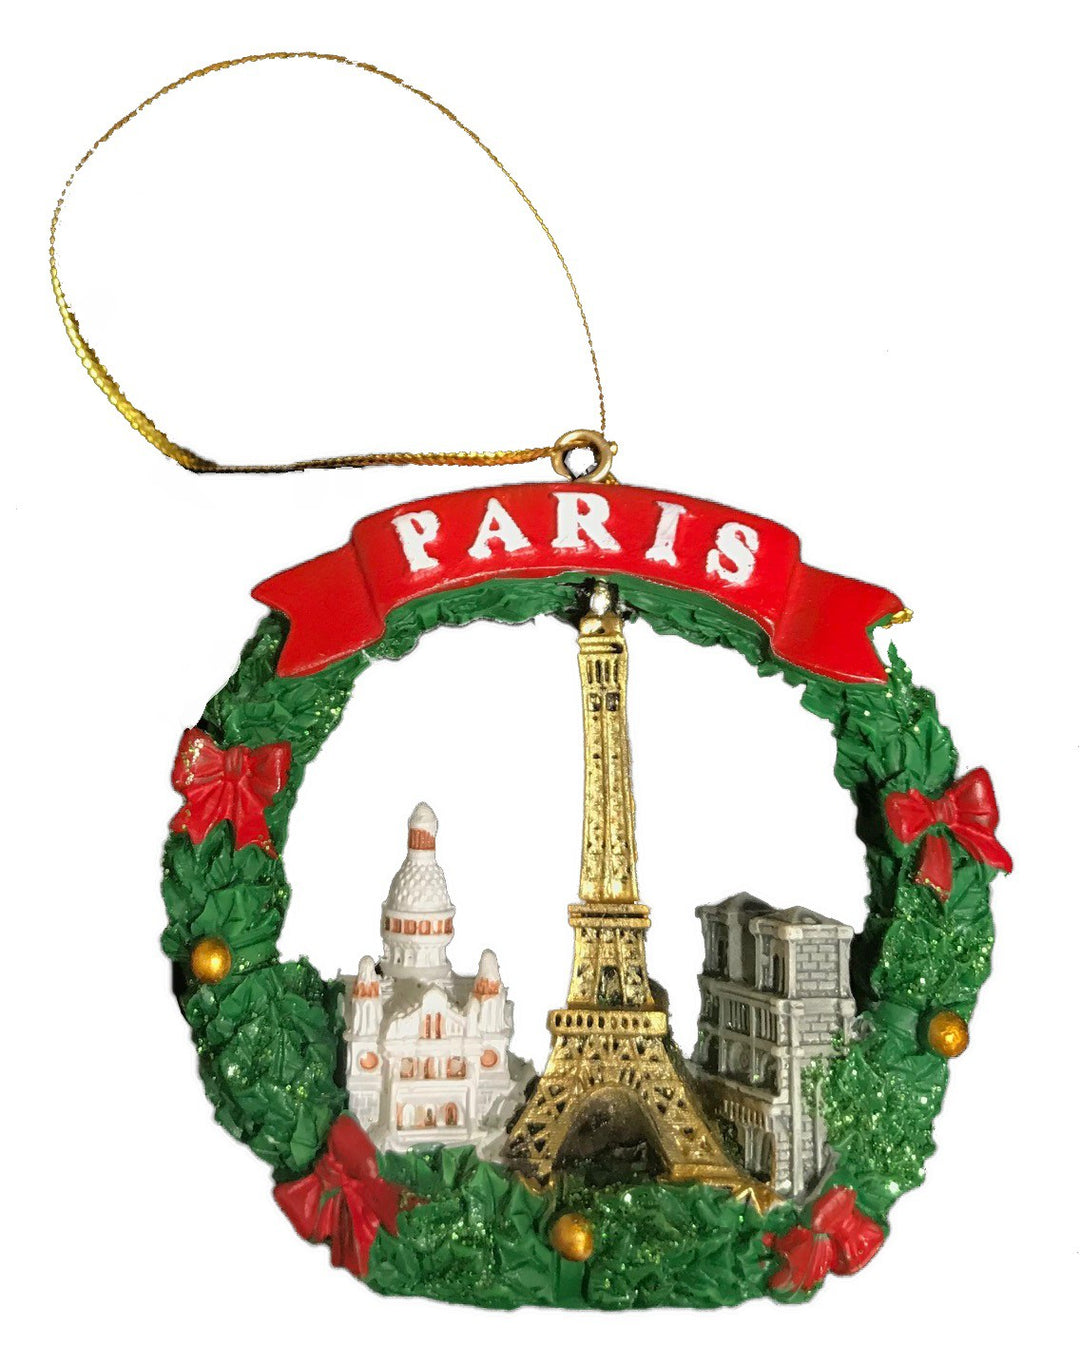 Décoration ronde avec noeuds rouge brillant en résine pour décoration de sapin de Noël, évoquant la chaleur et la joie des fêtes.